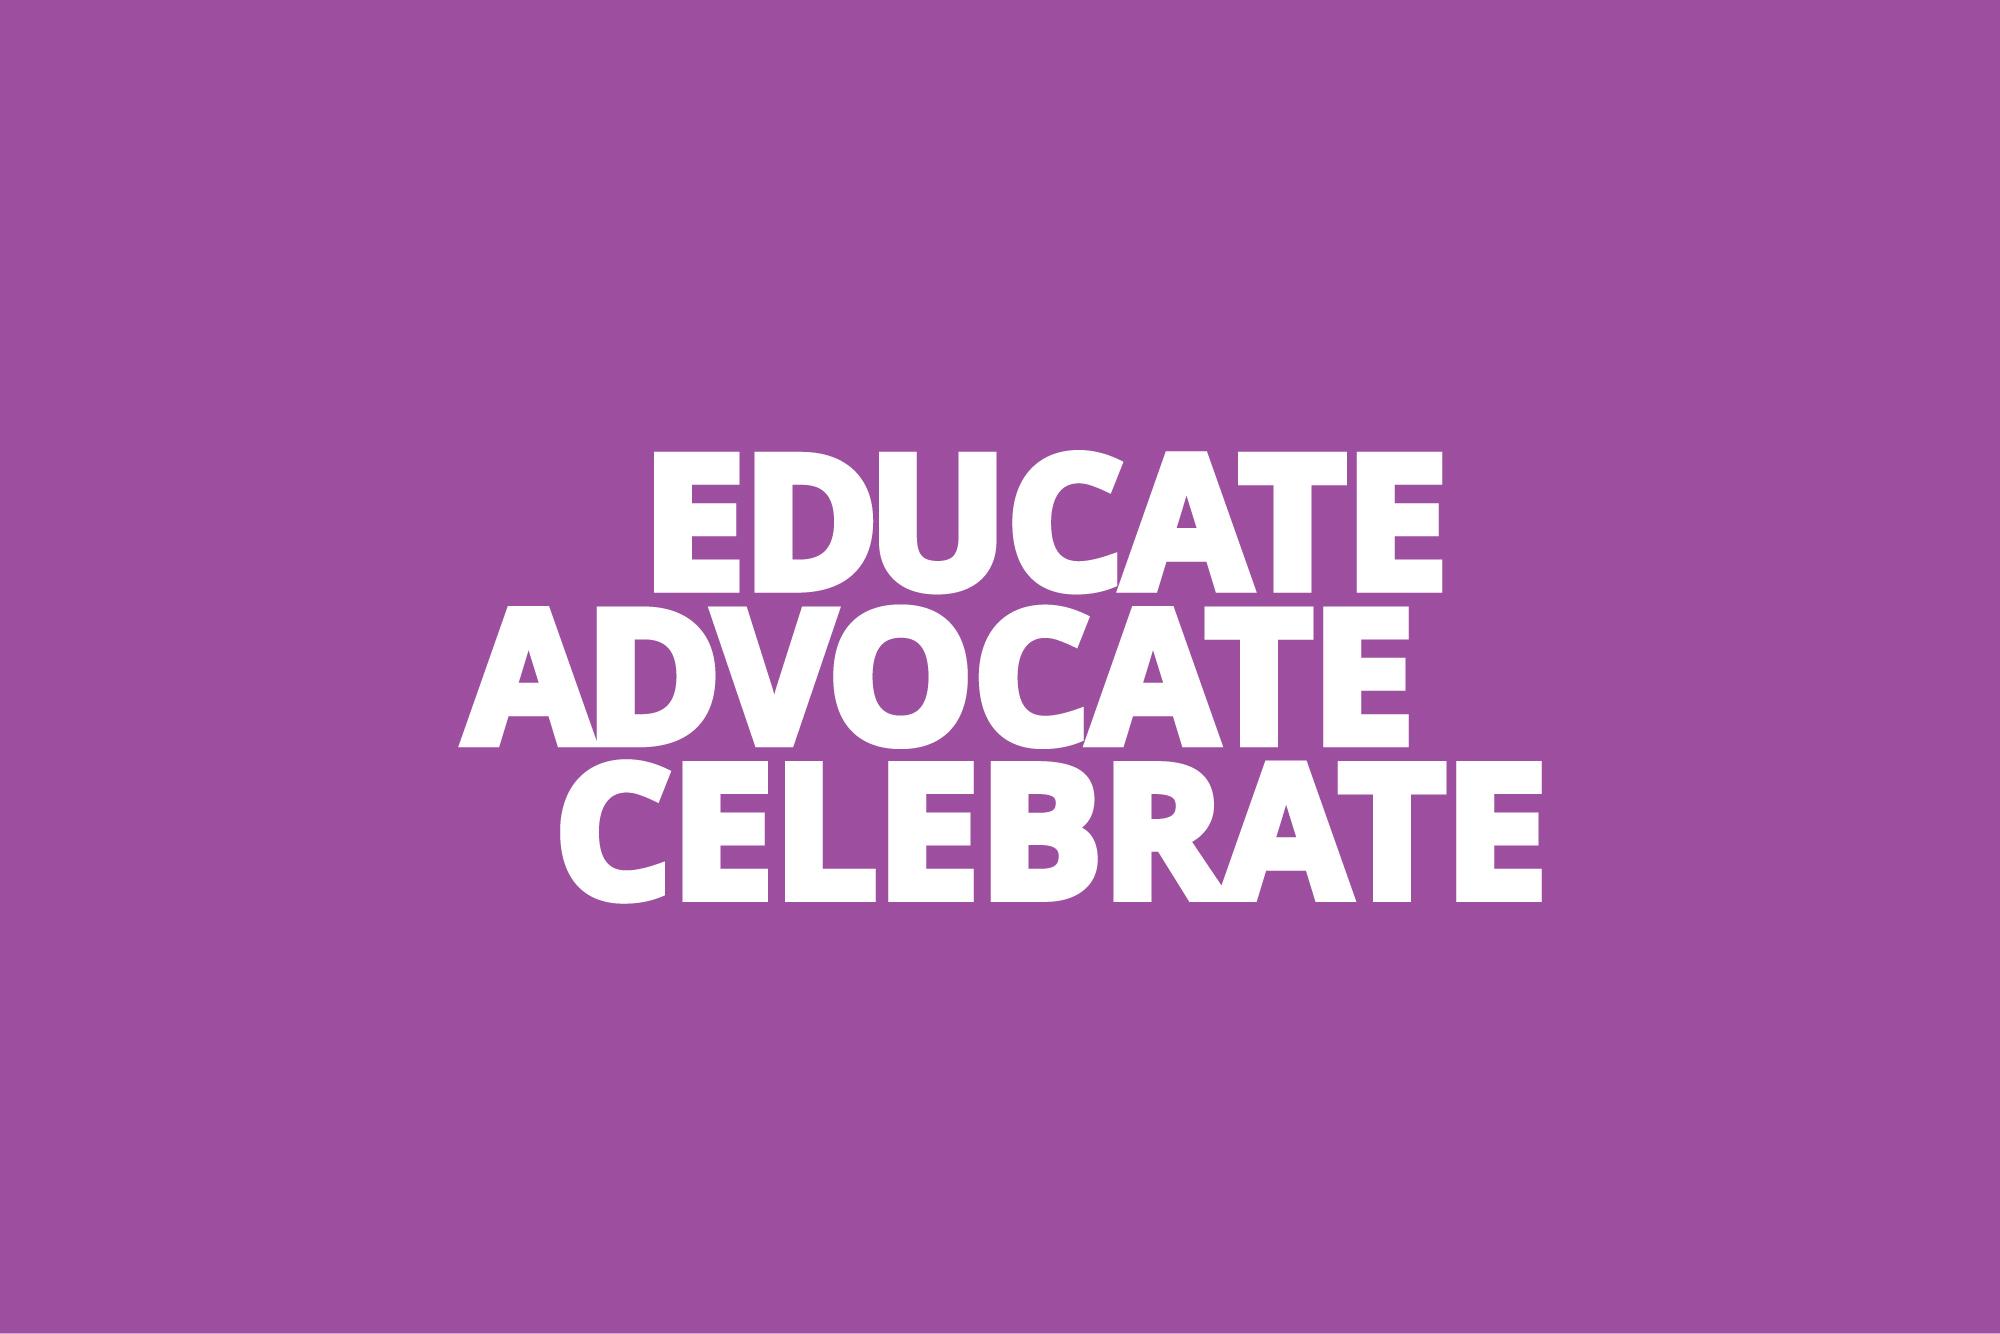 Rainbow Center tagline: Educate. Advocate. Celebrate.